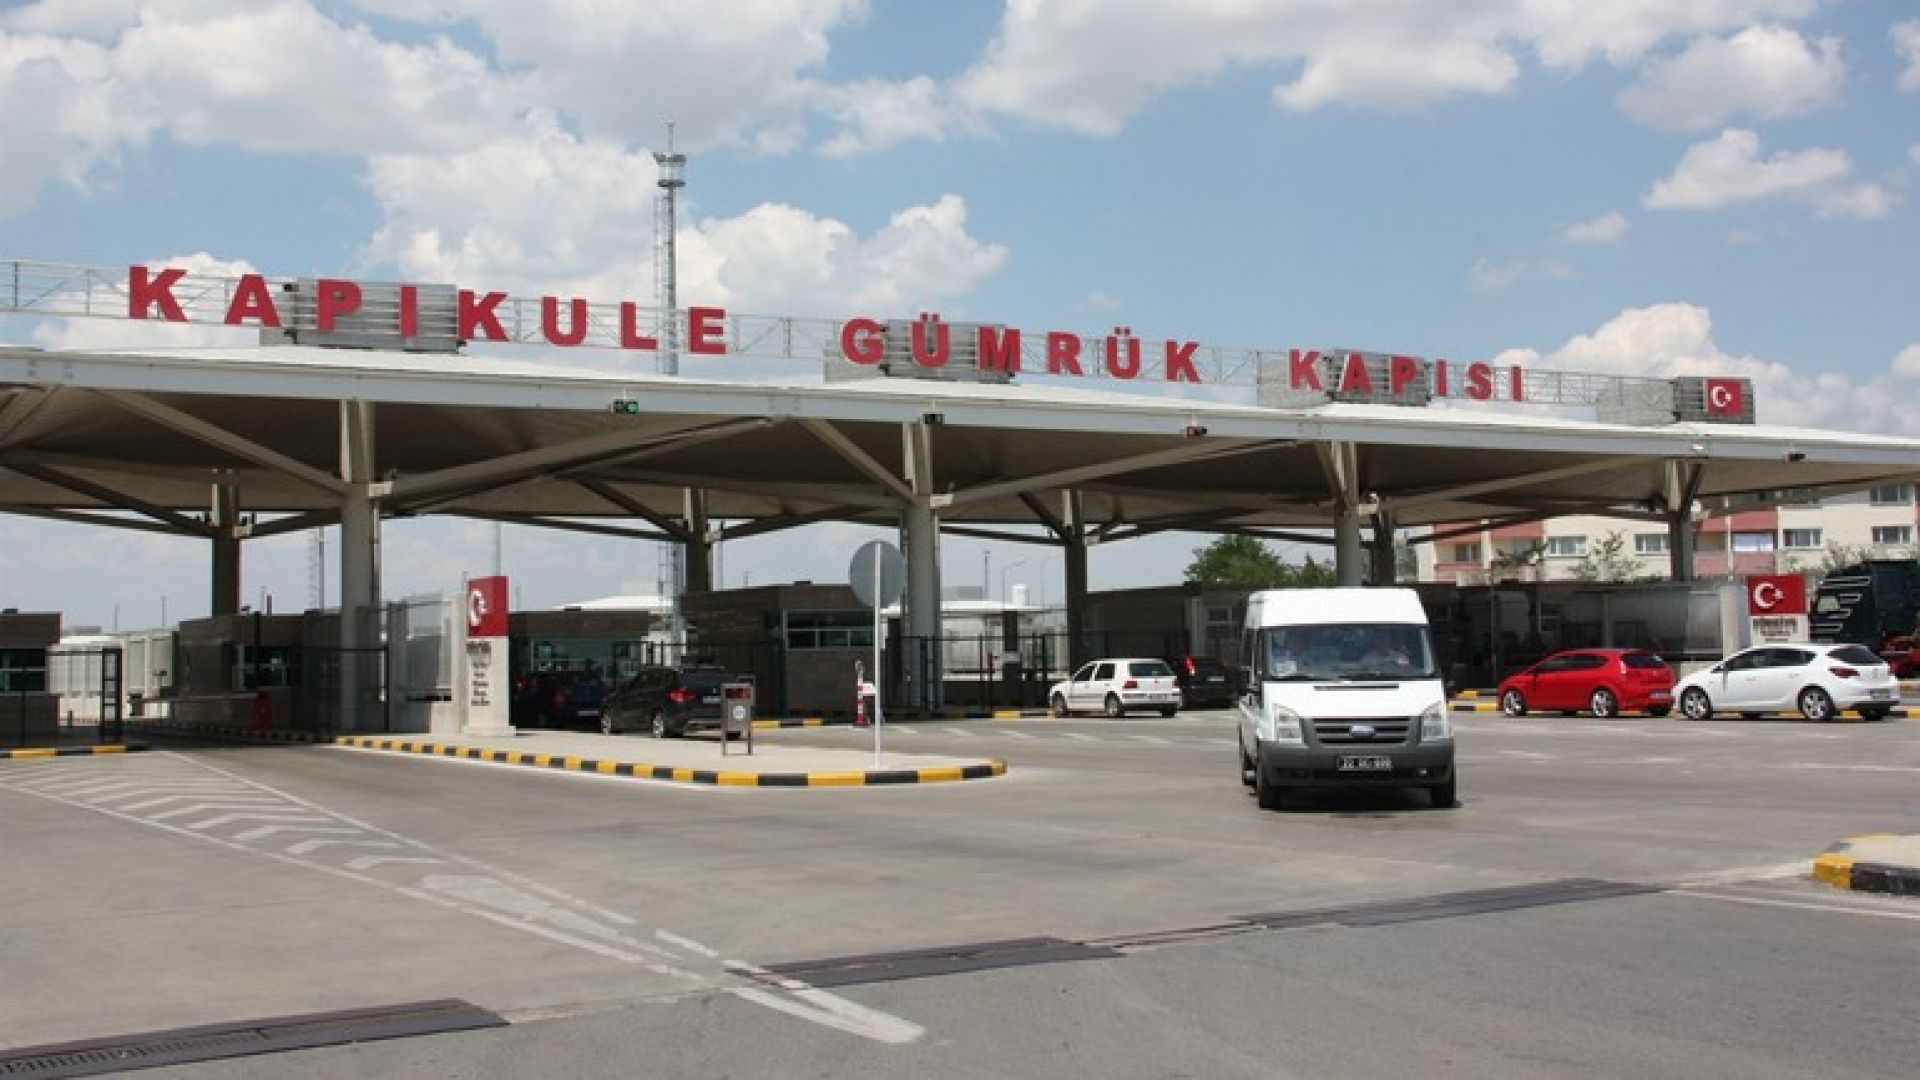 Над 500 хил. турци са минали през Капъкуле от началото на месеца